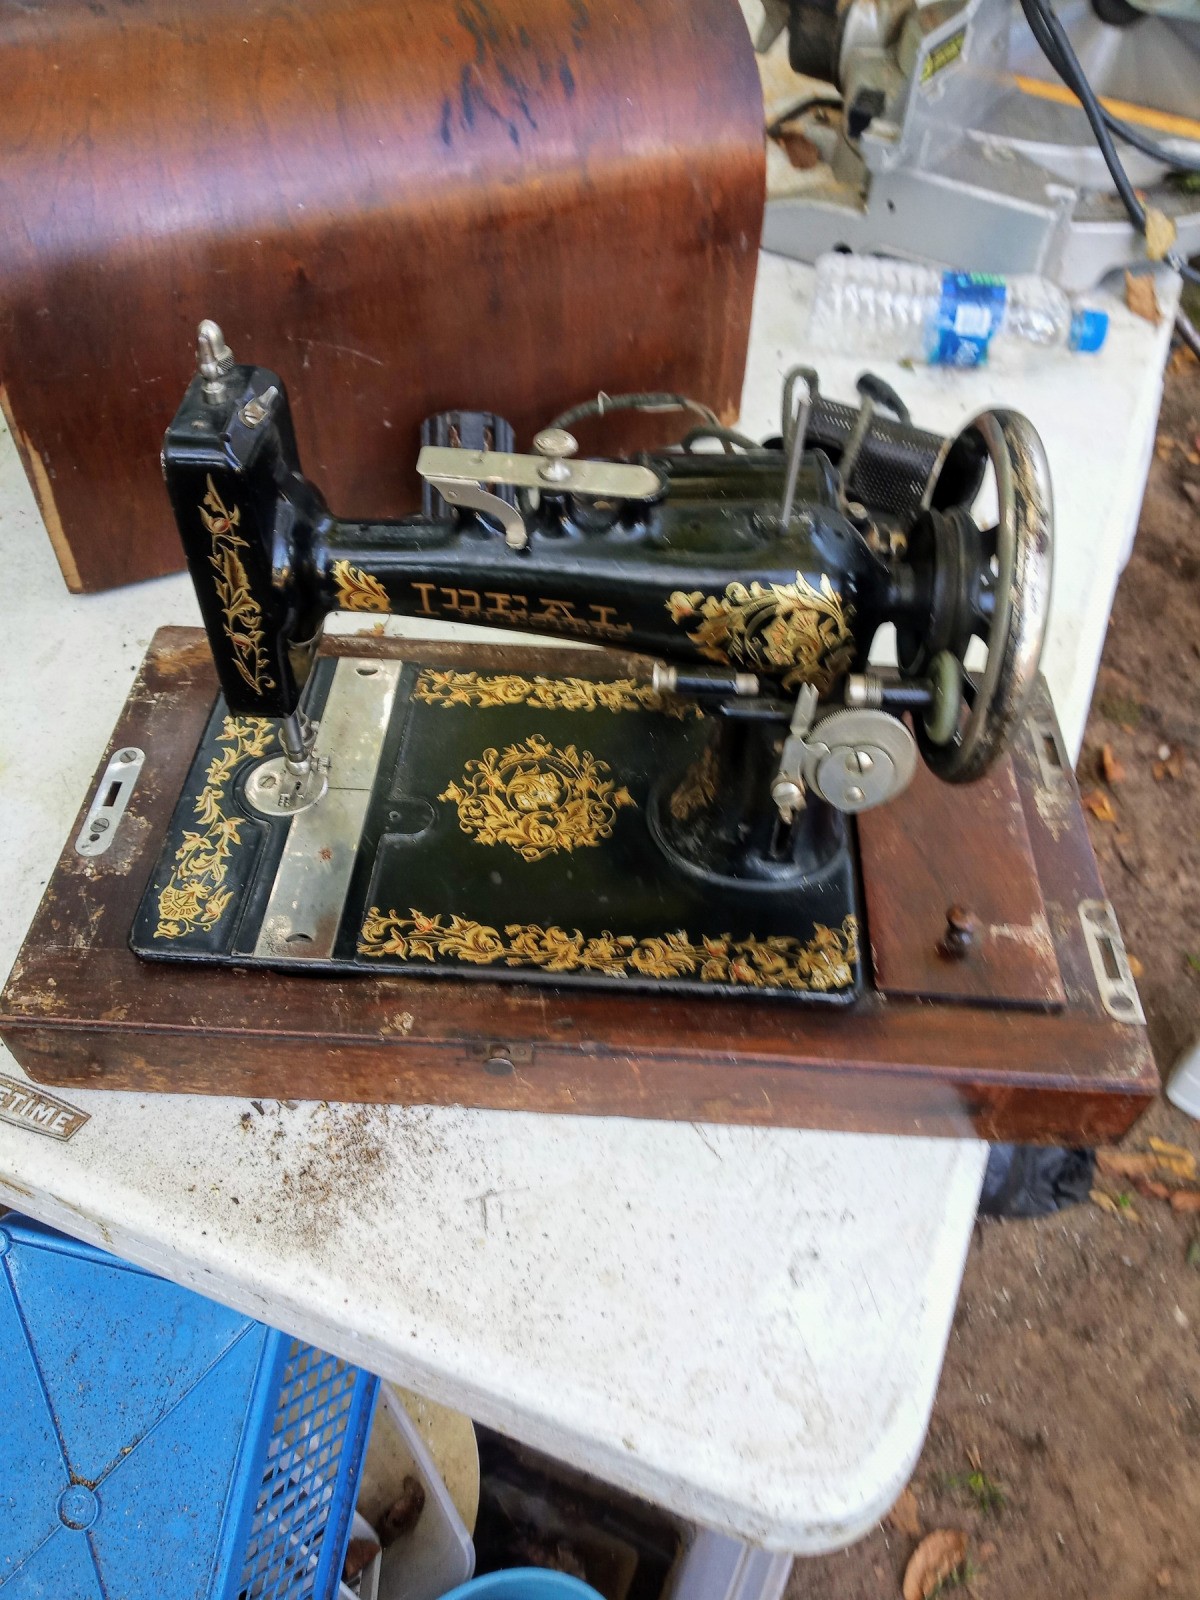 White rotary sewing machine worth